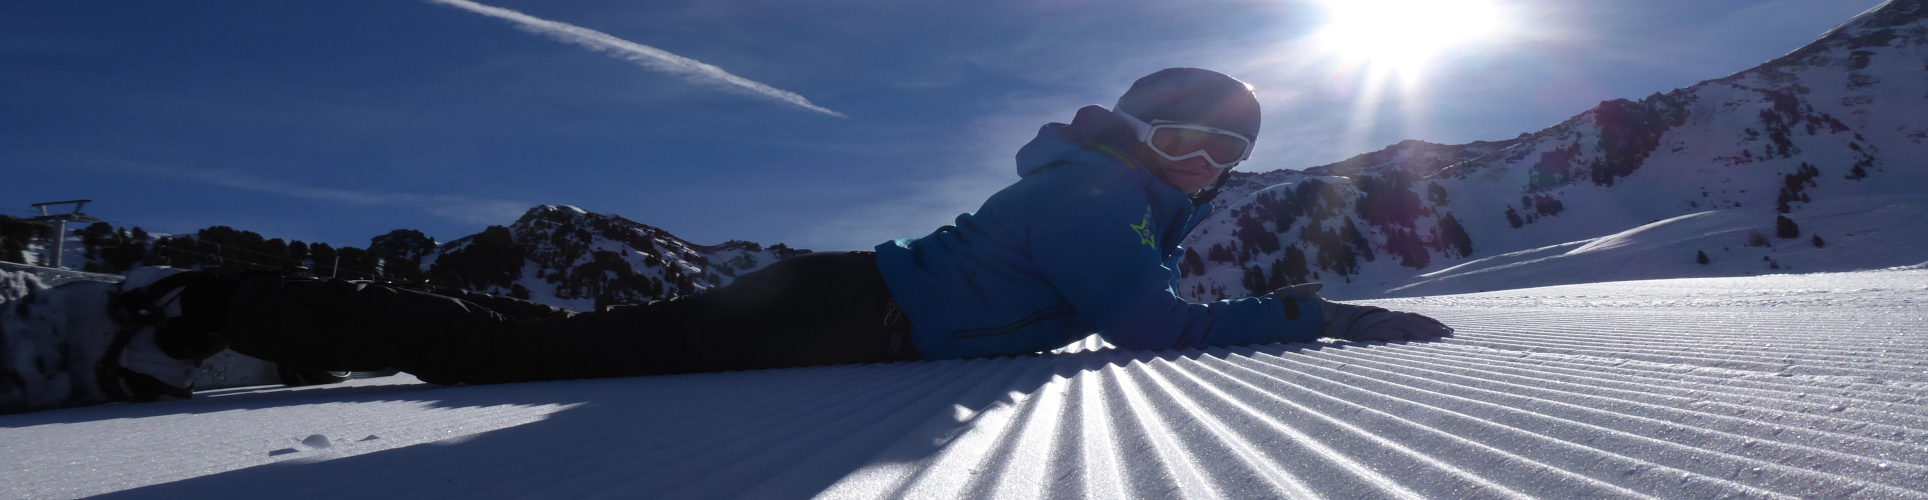 ZILLERTAL – verlängertes Skiwochenende mit 4 Skitagen – SkiSafari – Mayrhofen, Kaltenbach, Zell am Ziller – ab Donnerstag früh 